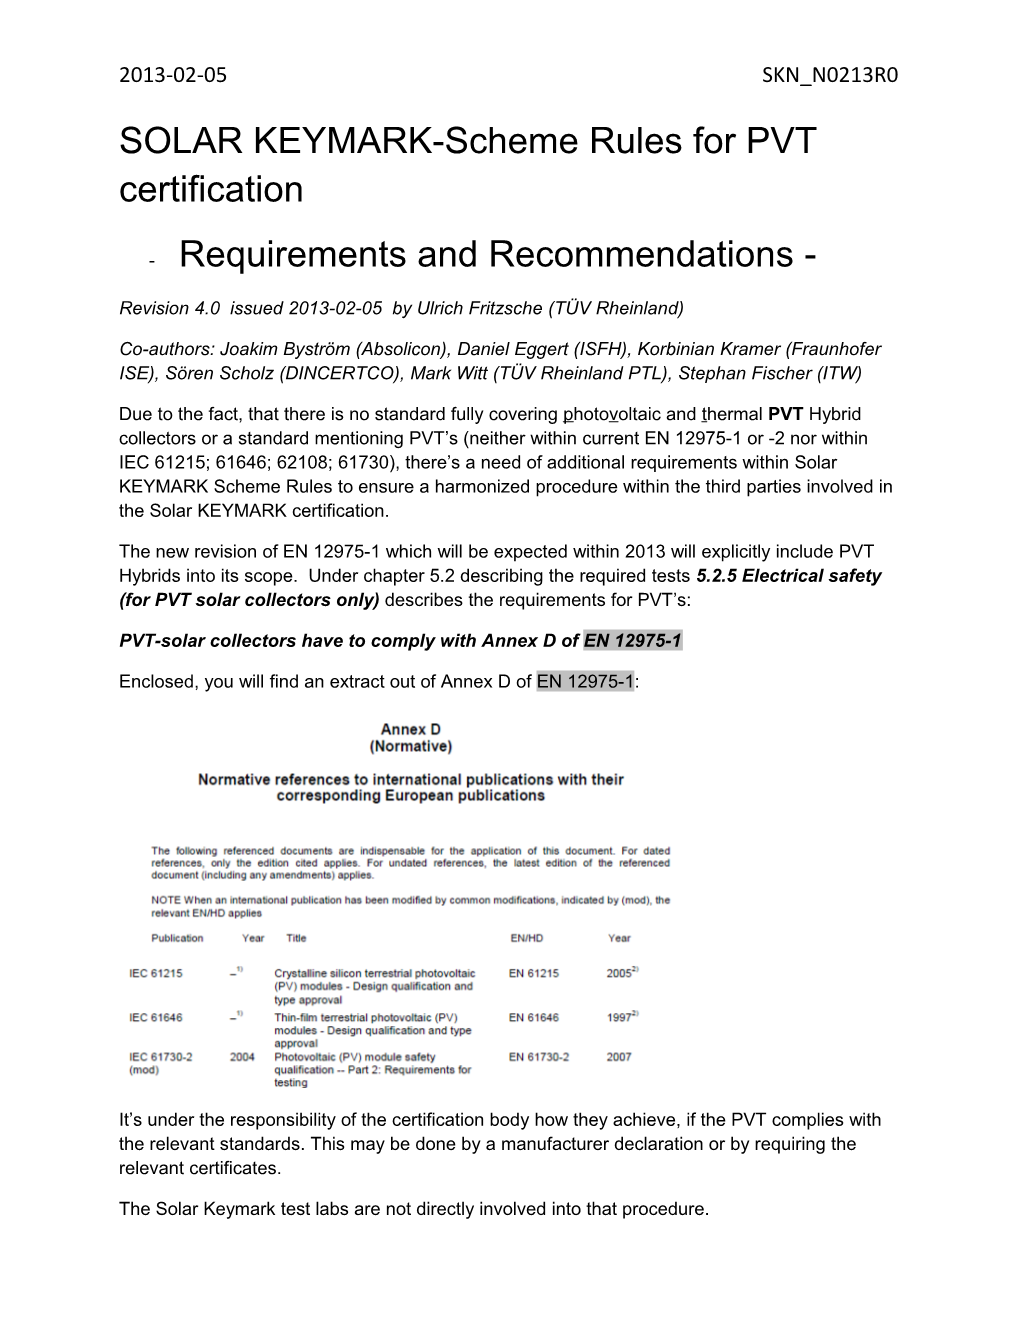 SOLAR KEYMARK-Scheme Rules for PVT Certification